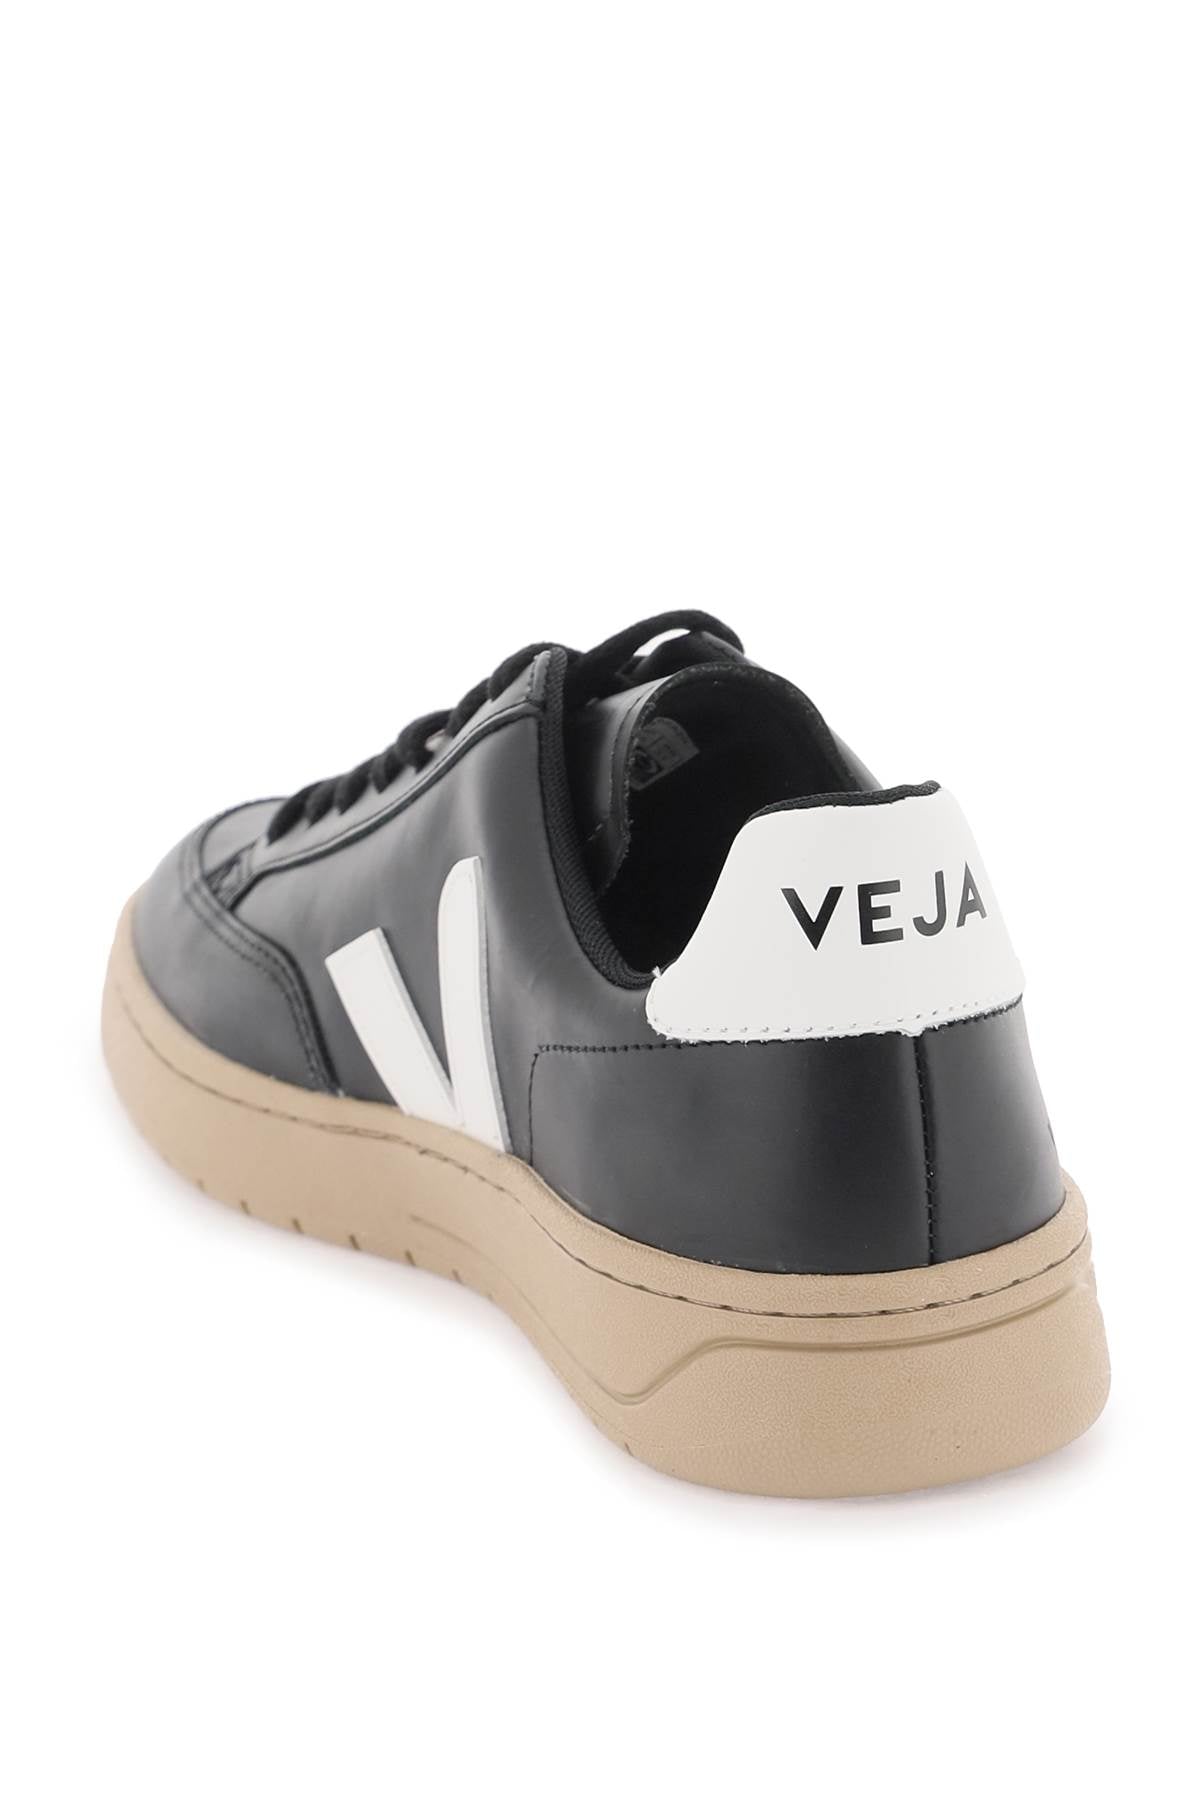 Veja leather v-12 sneakers-2